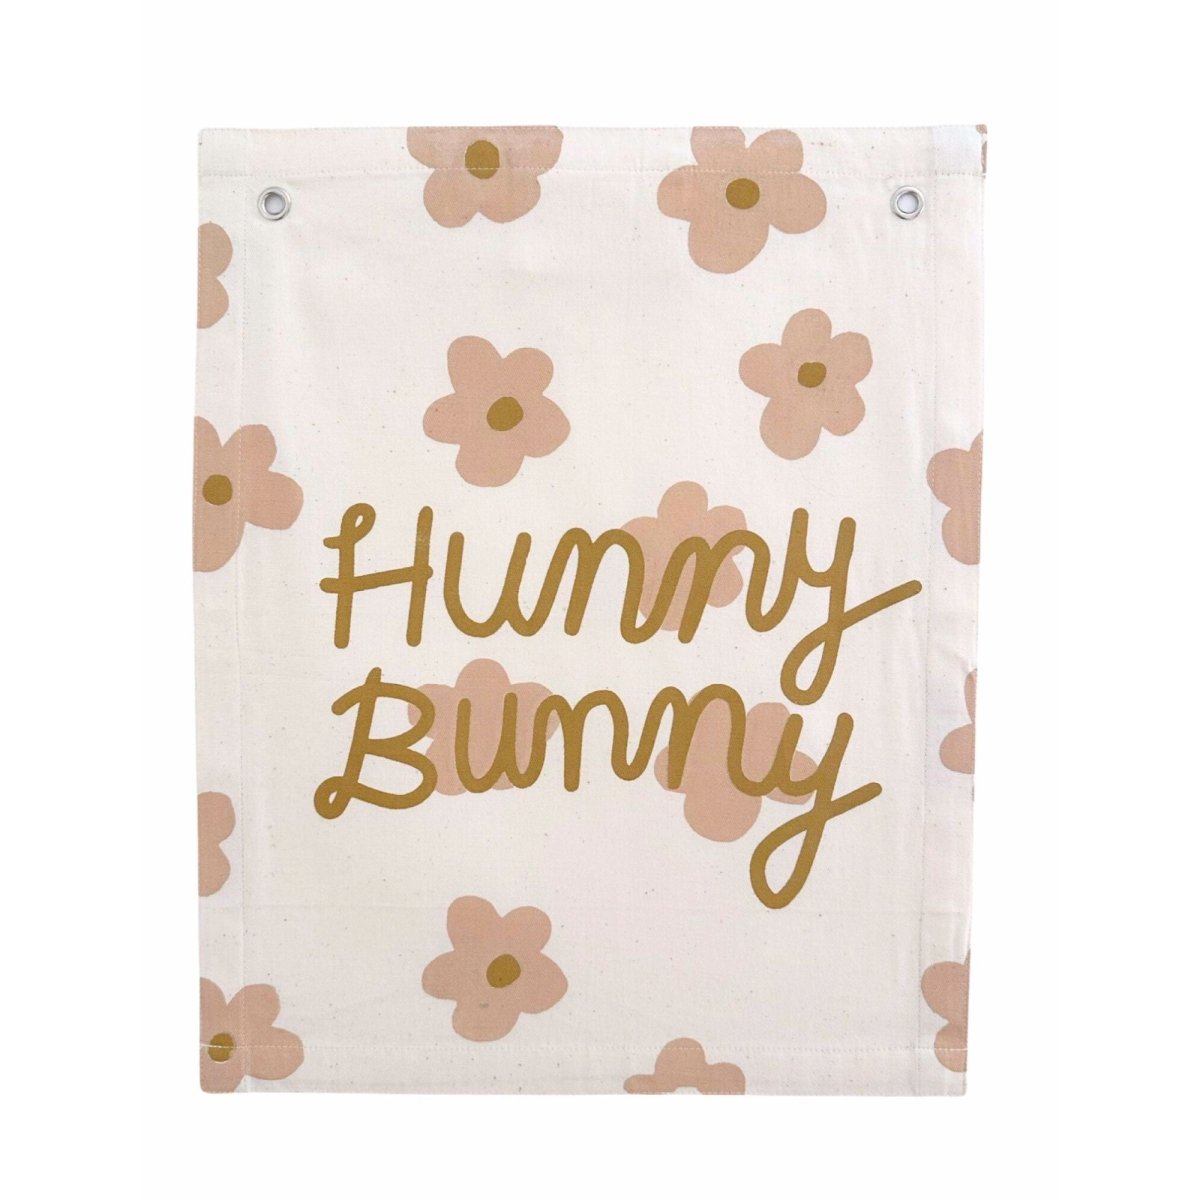 Imani Collective Hunny Bunny Banner - lily & onyx